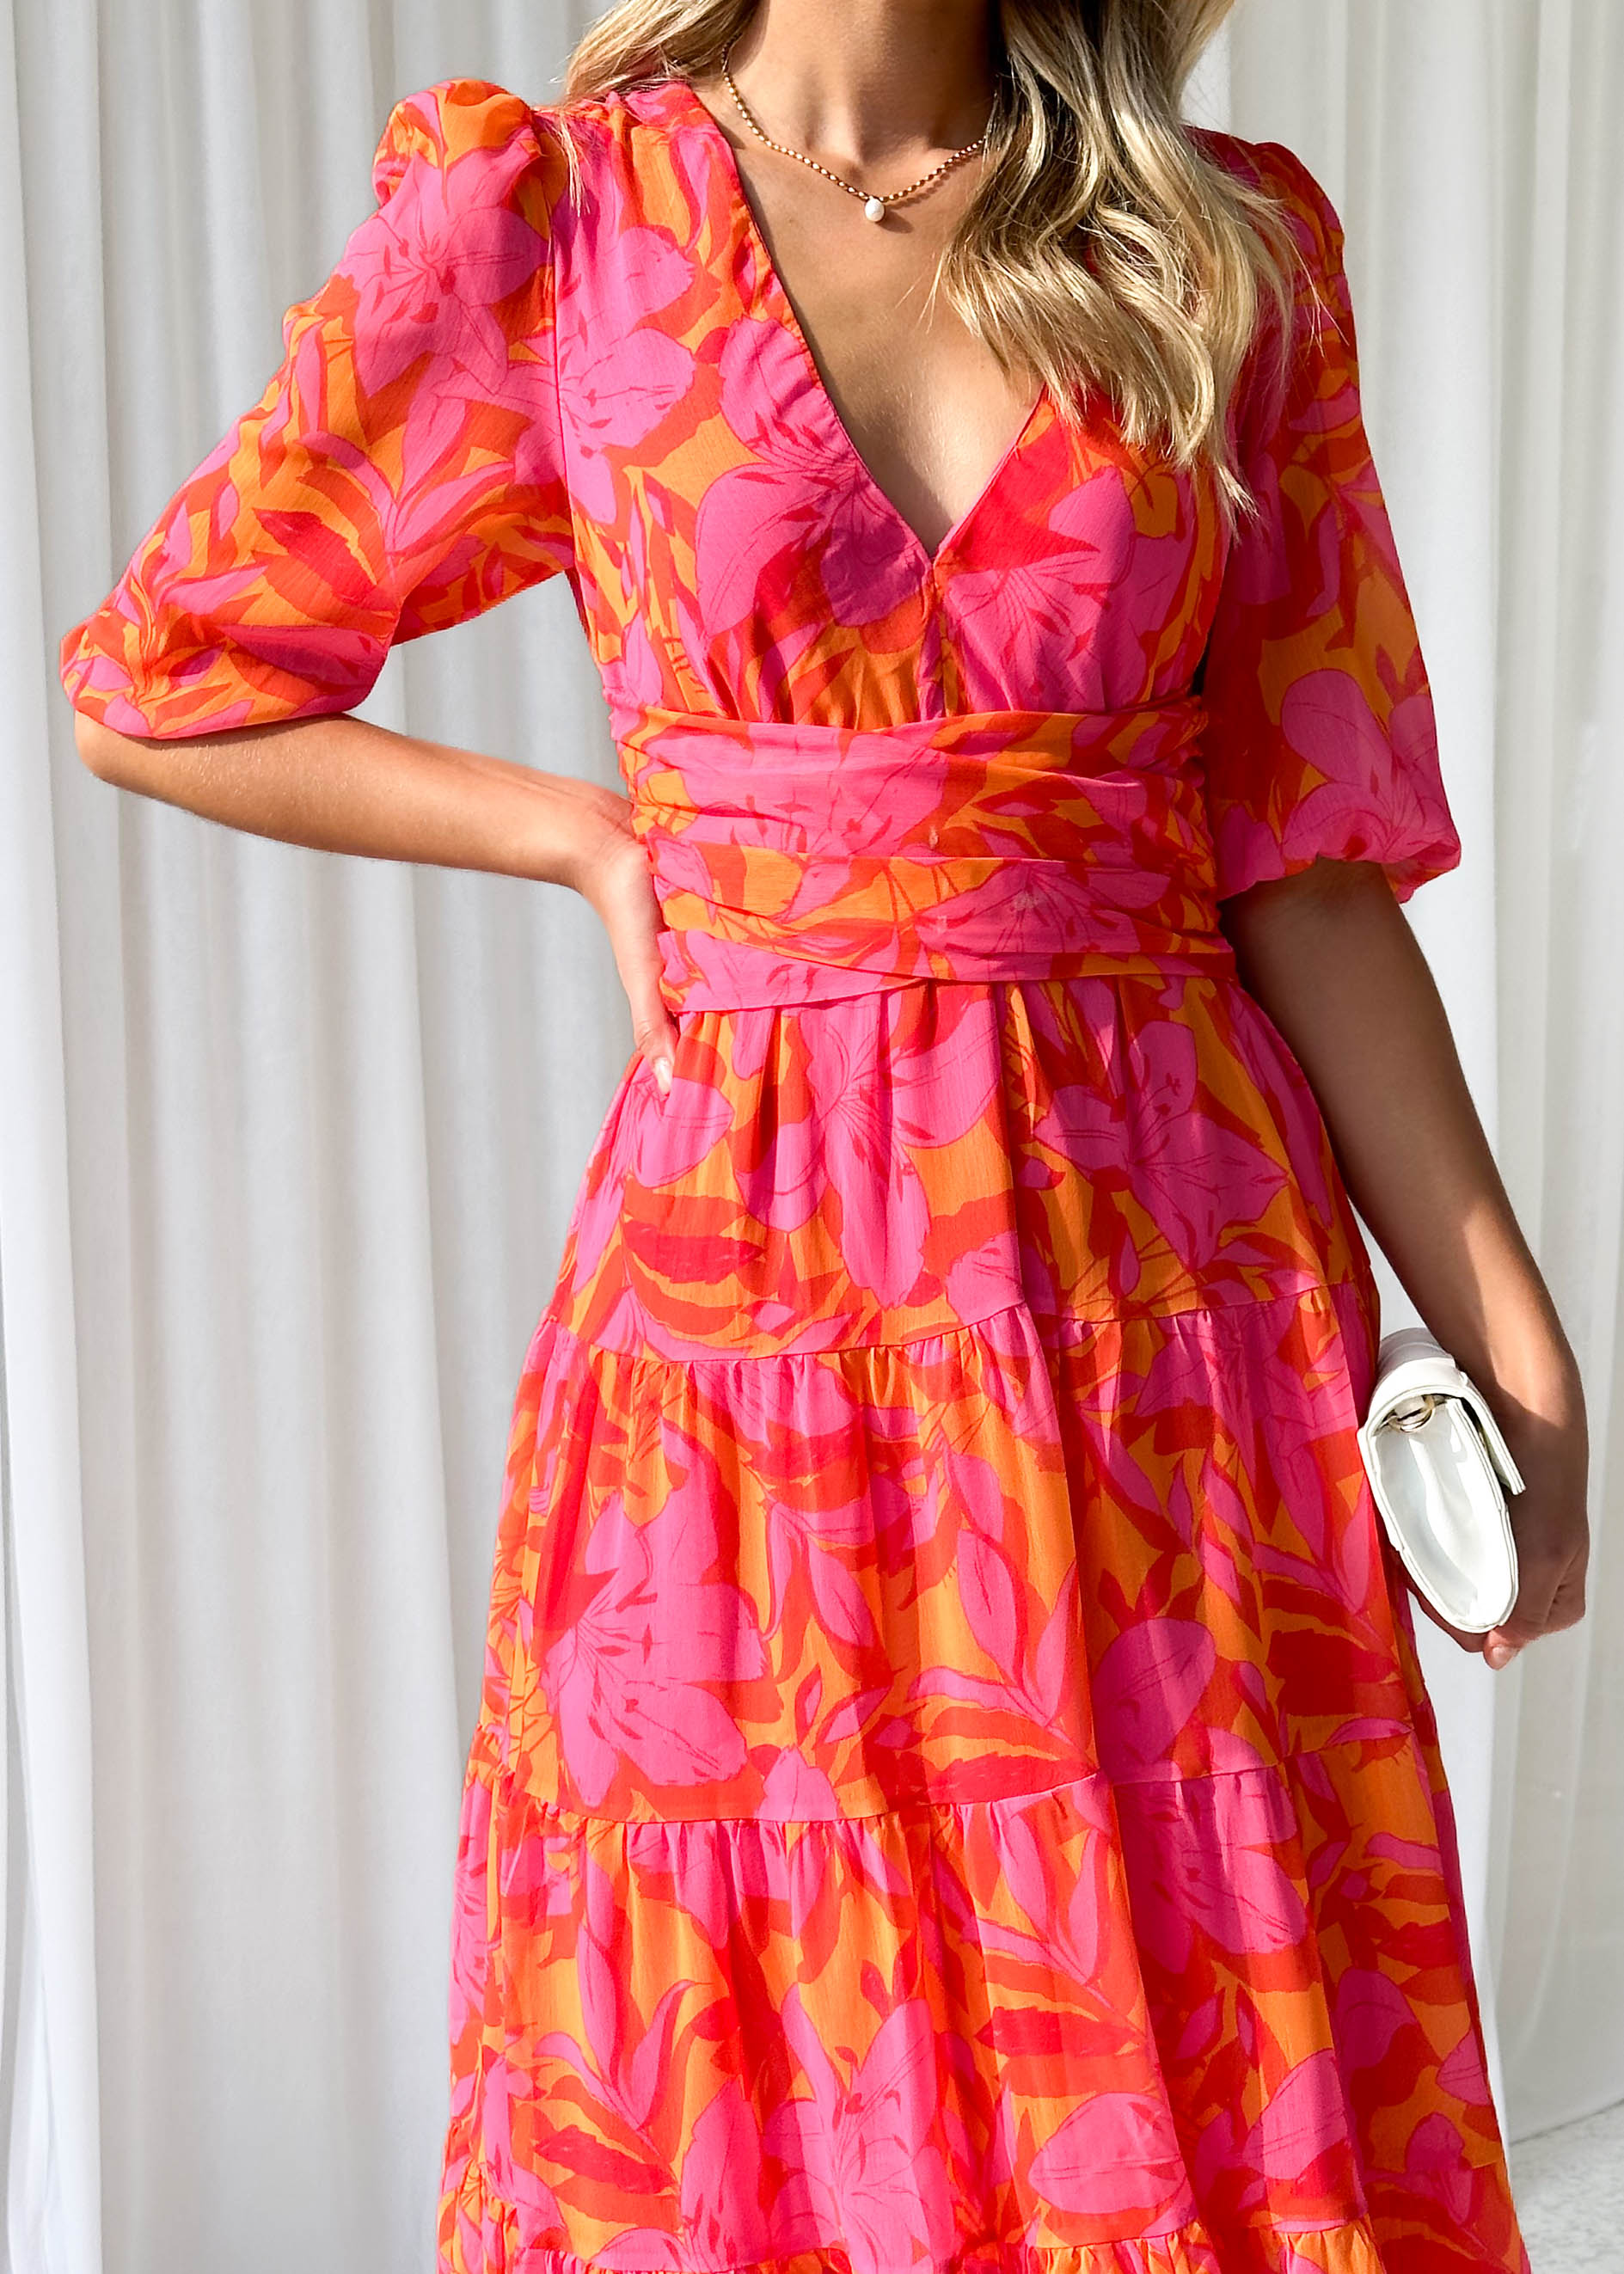 Catana Maxi Dress - Tangerine Floral